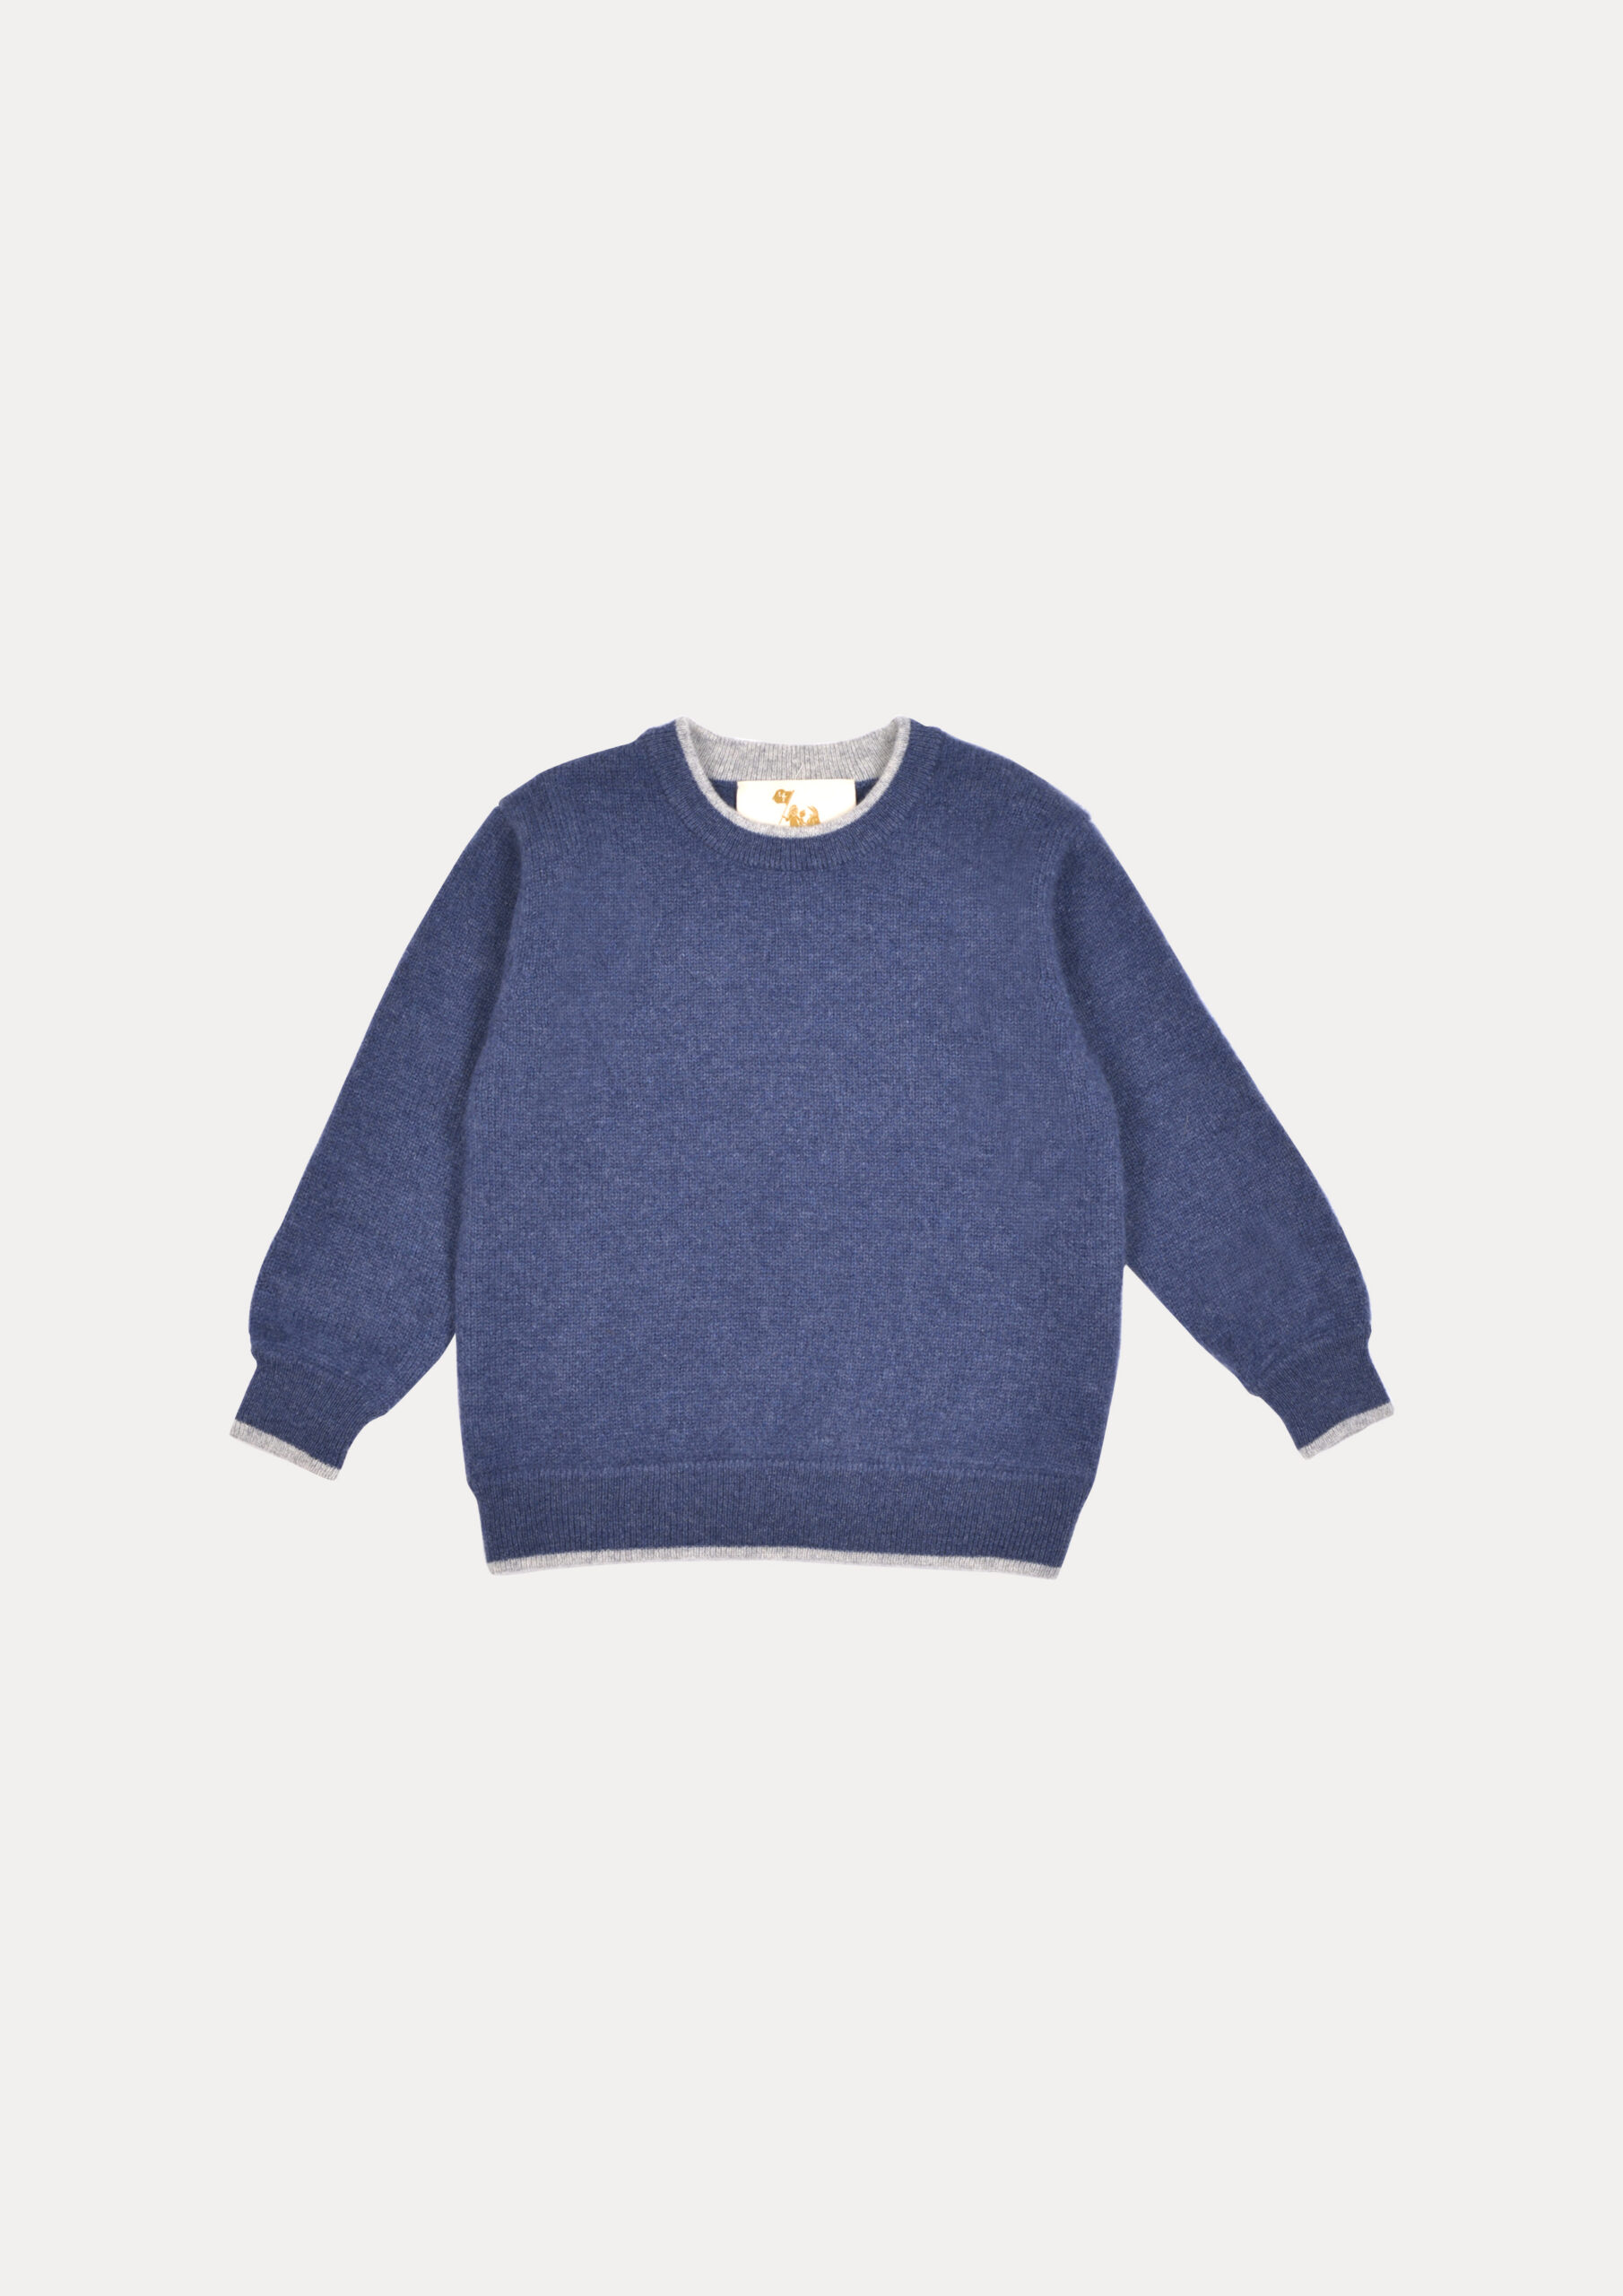 Classic Grey Cuff Sweater – M&7